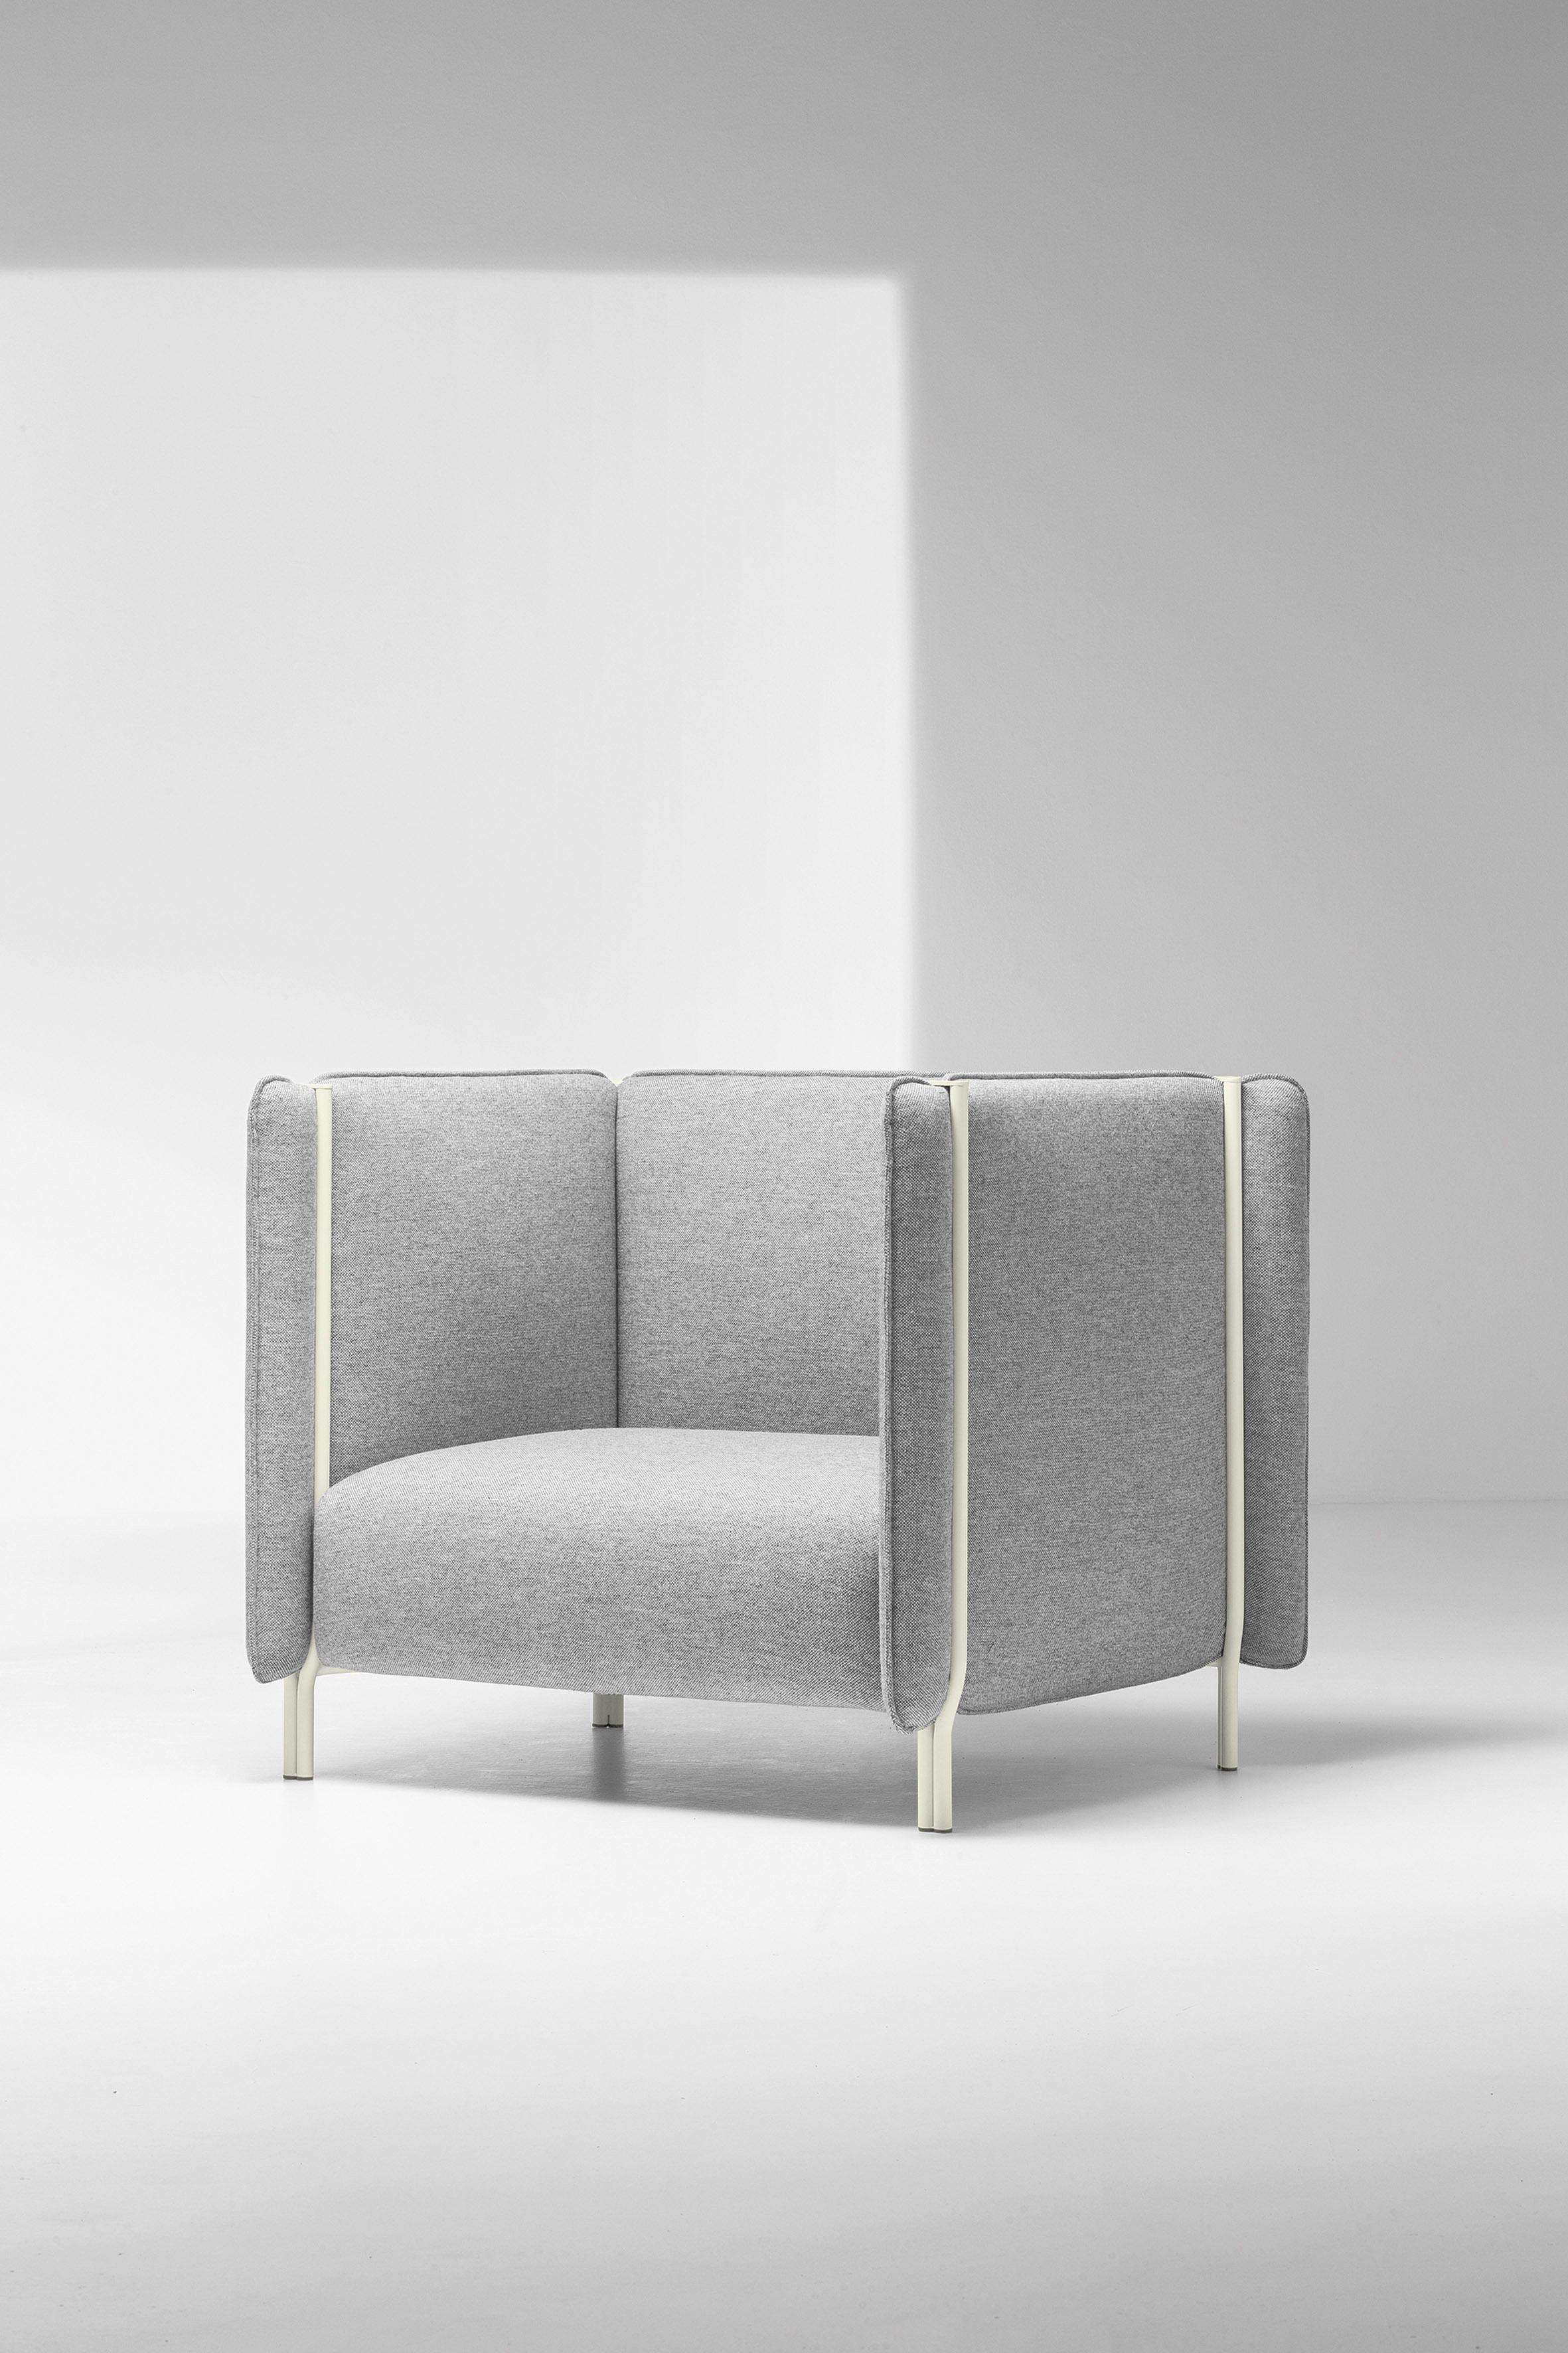 Die Auswahl von Pinch ist das Ergebnis von Überlegungen zu Materialien und Konstruktionstechniken für moderne gepolsterte Sitzmöbel. Die Strukturen der Pinch-Sofas und -Sessel 